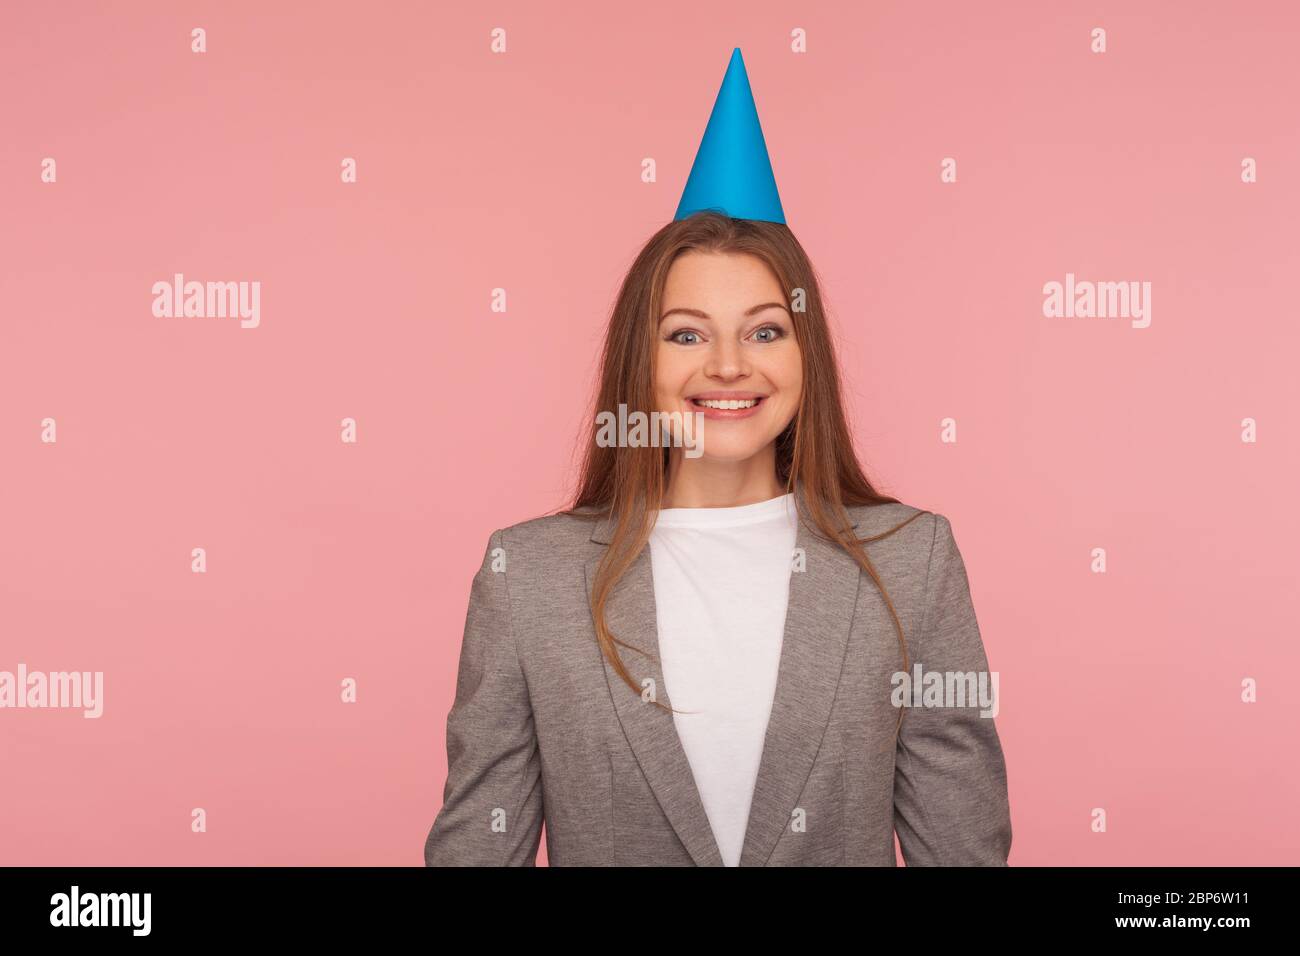 Porträt von glücklichen freudigen Frau im Business-Anzug und mit Party-Kegel auf dem Kopf lächelnd in der Kamera, Geburtstagsfeier, Job-Promotion. In Stockfoto